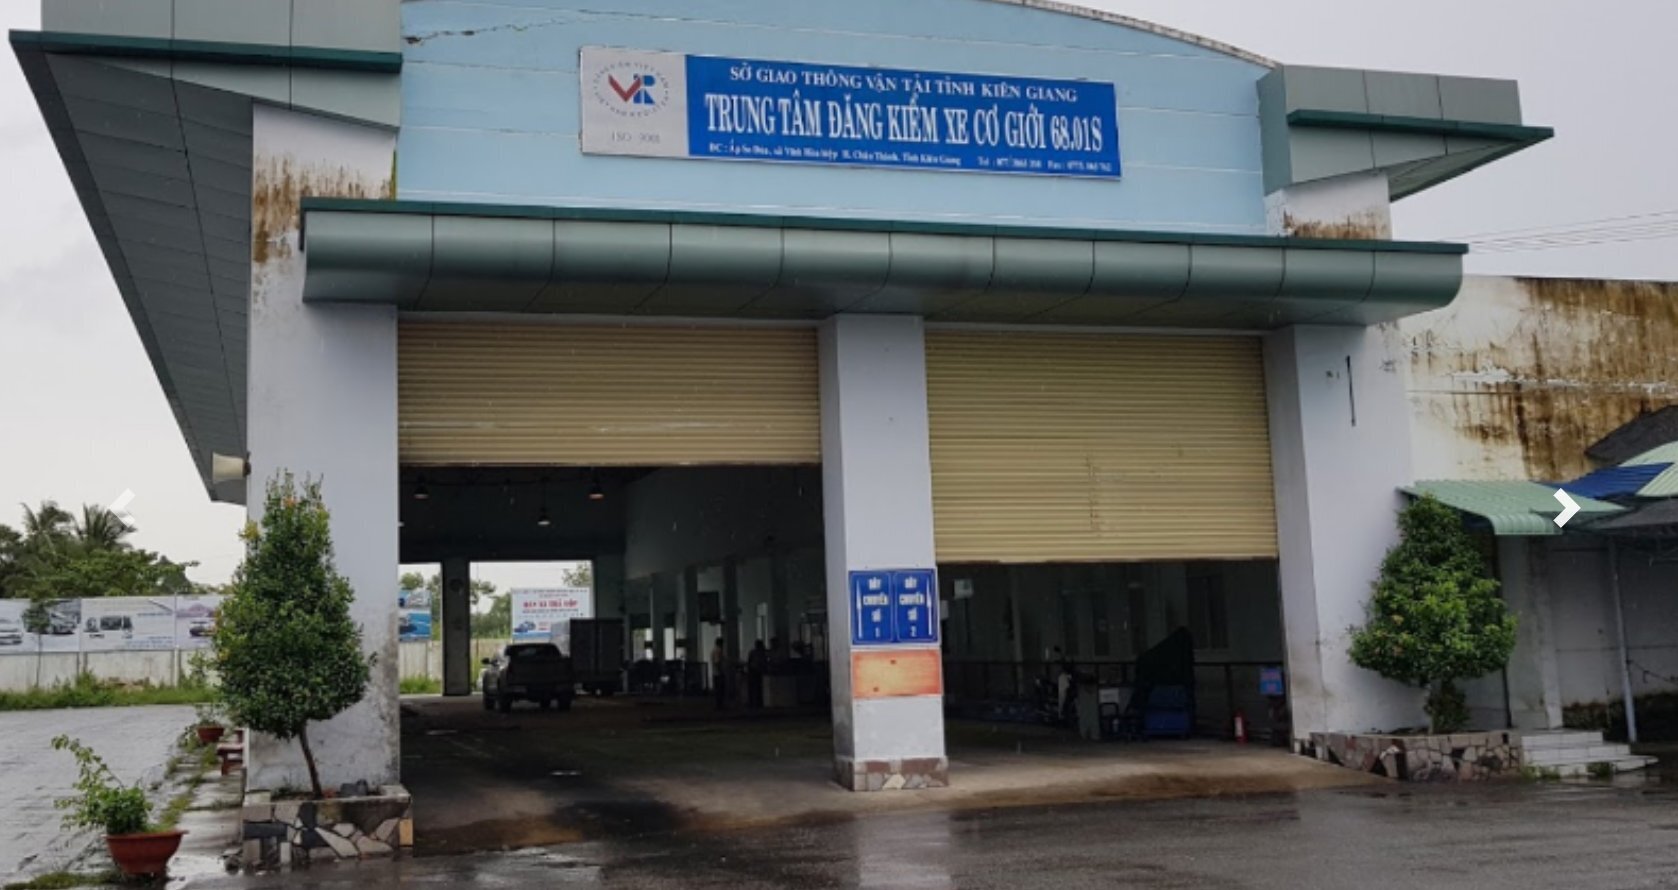 Trung tâm Đăng kiểm xe cơ giới Kiên Giang 68.01S.